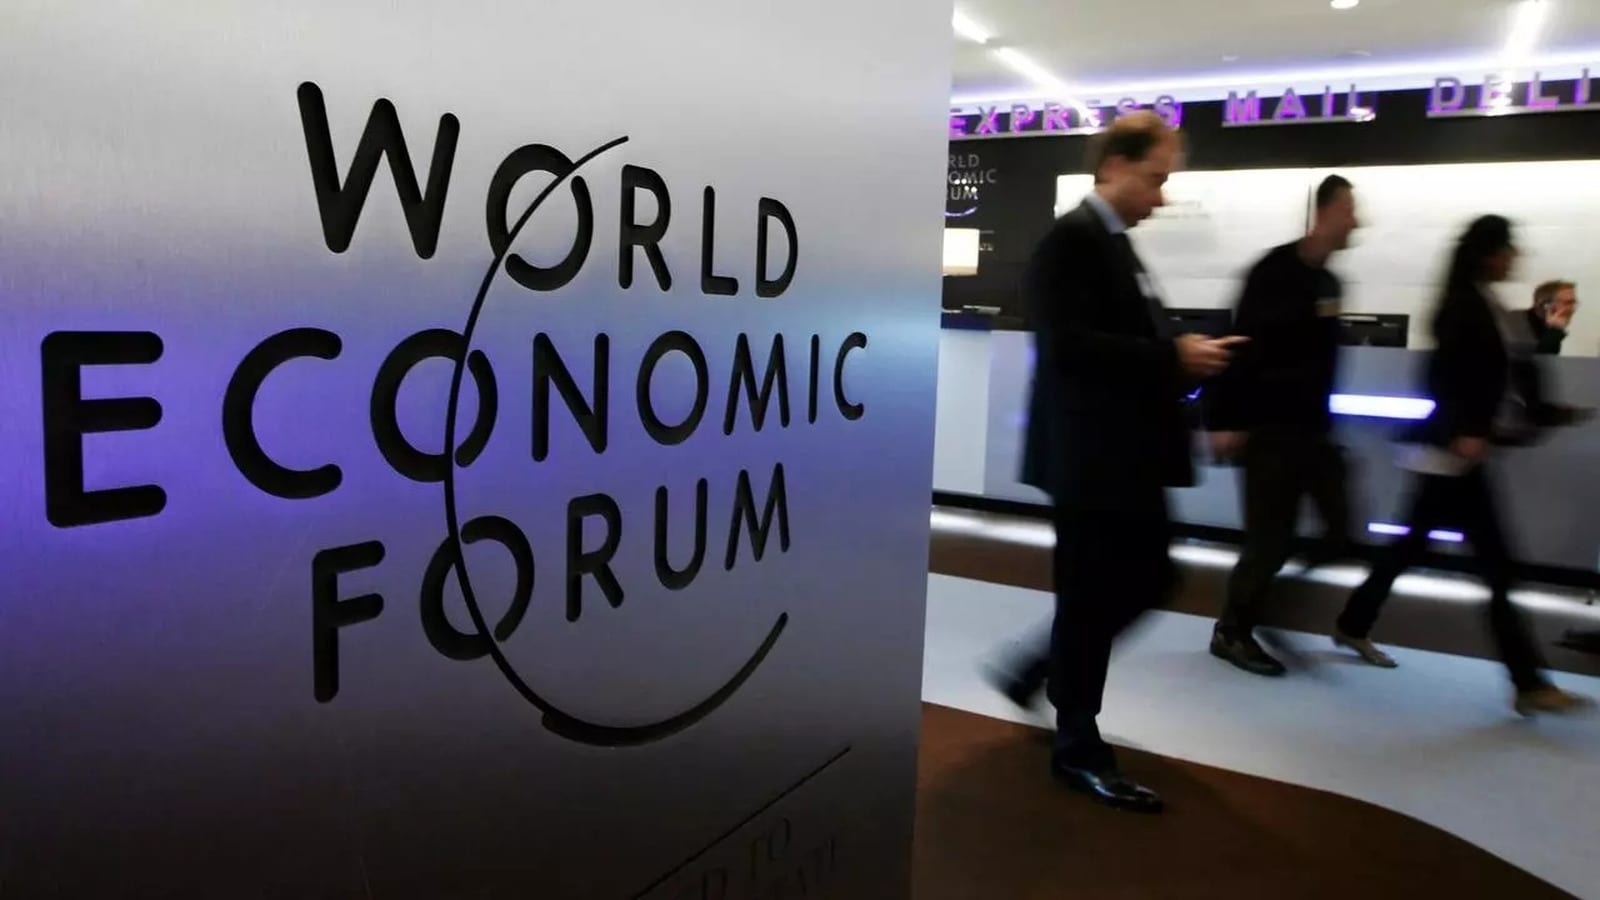 Moçambique/Economia: O Ministro Moreno participa no Fórum Económico Mundial em Davos